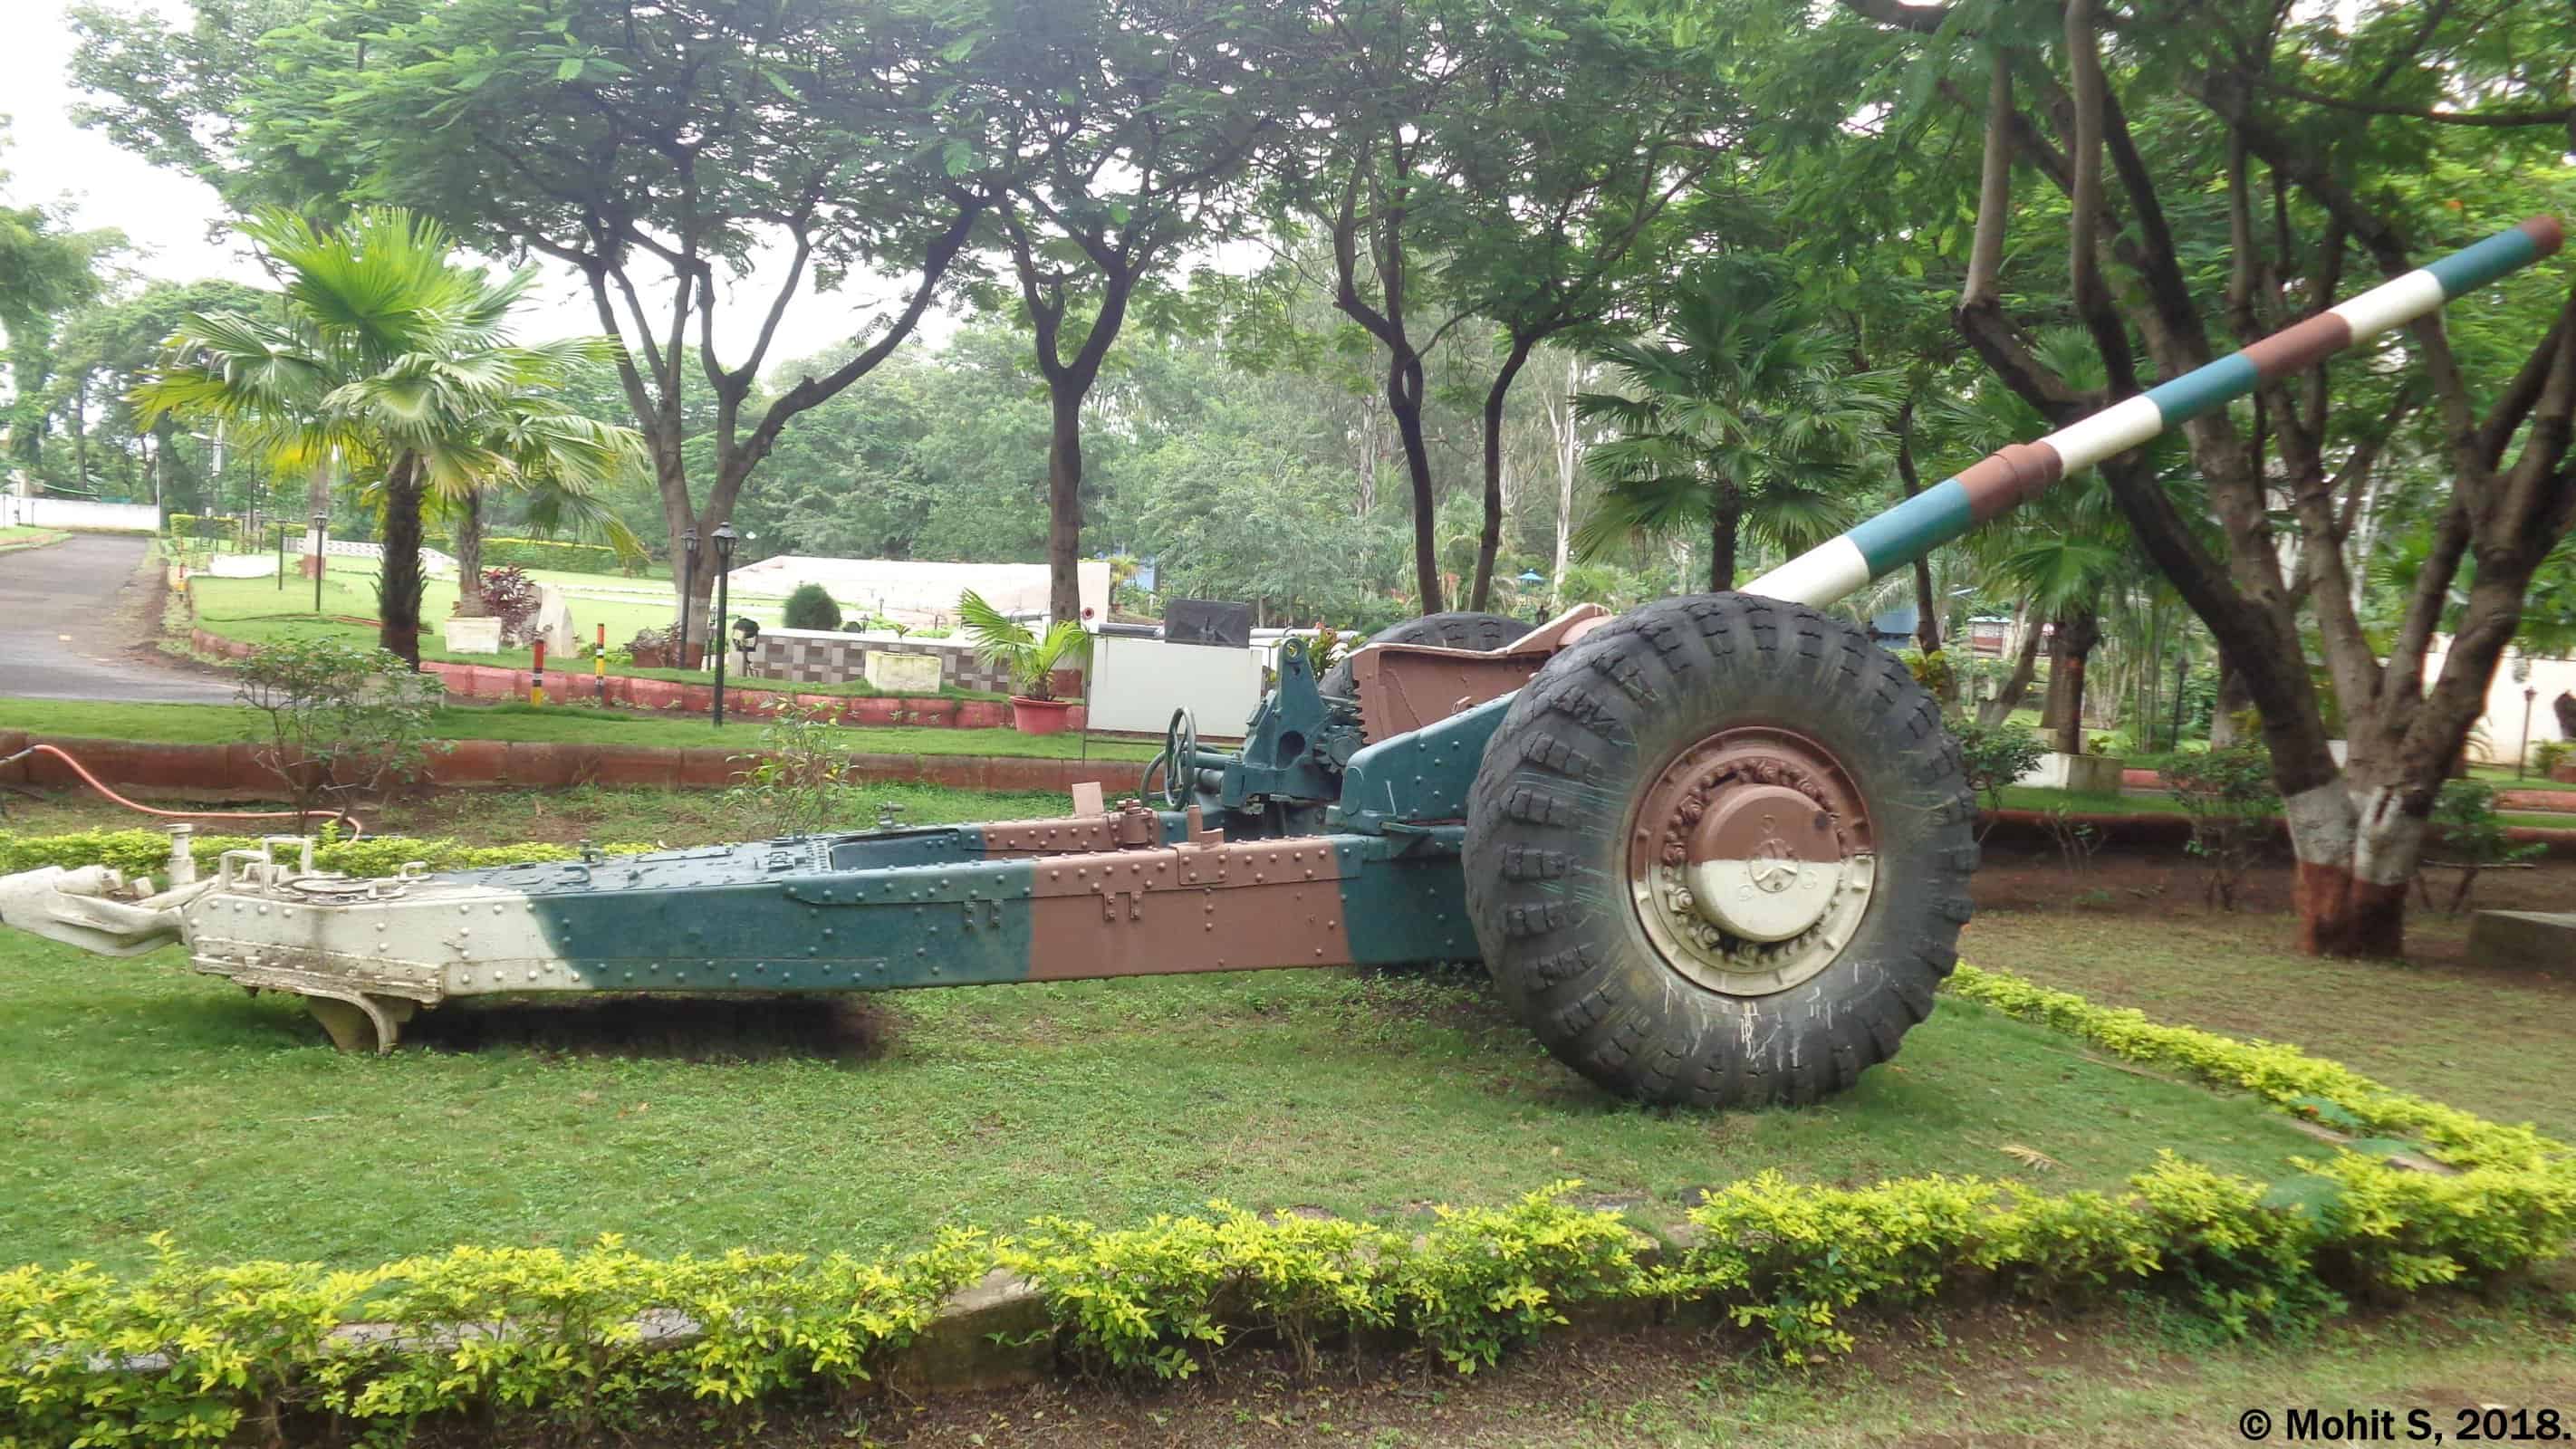 Artillery Gun. by Mohit S